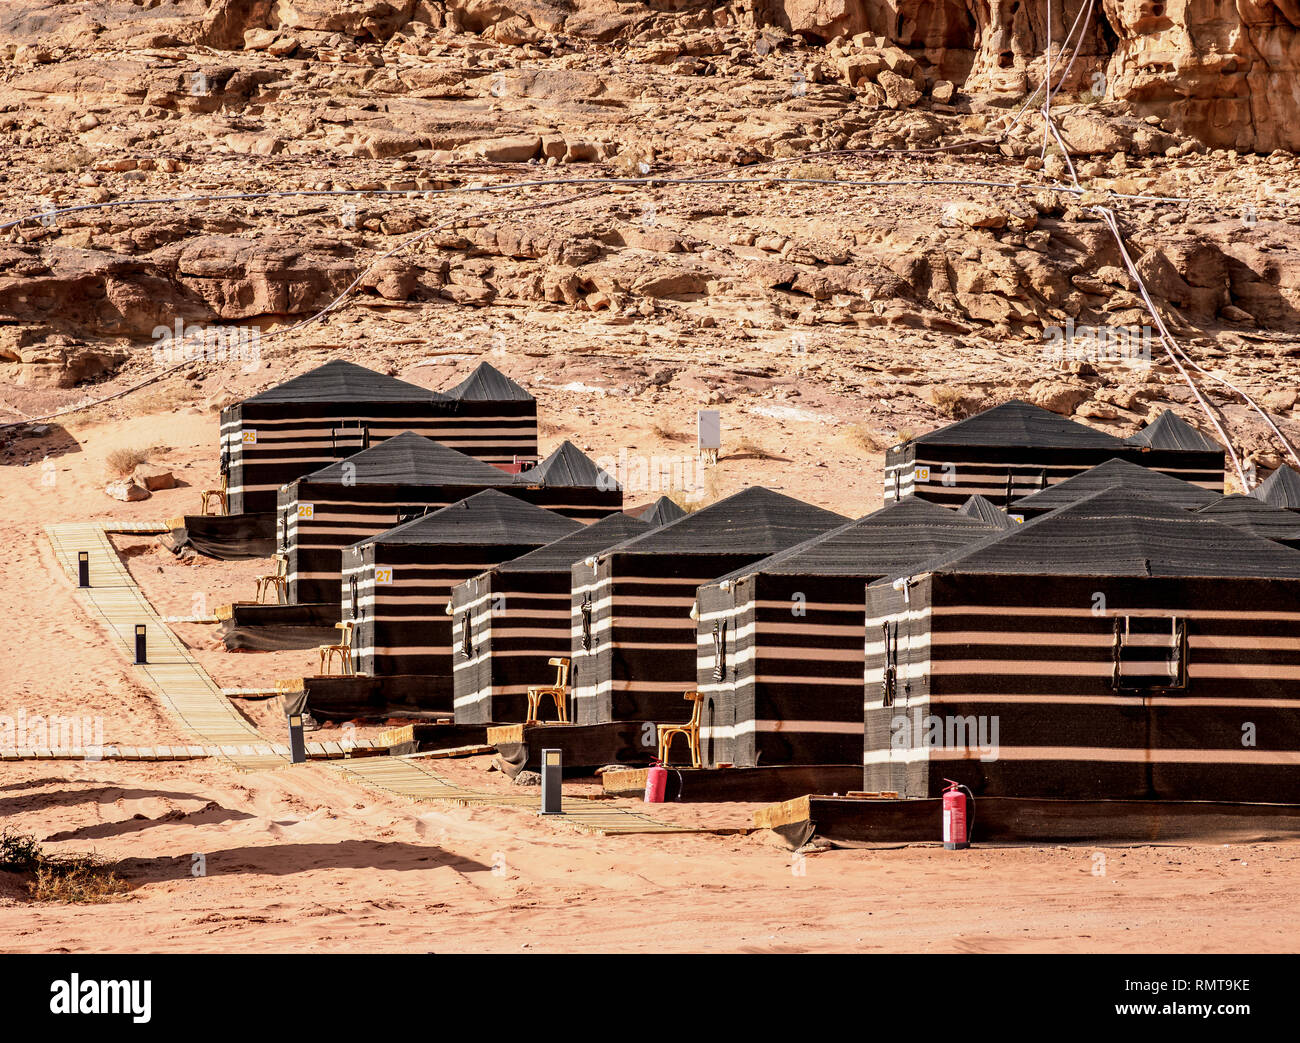 sun city camp wadi rum jordan